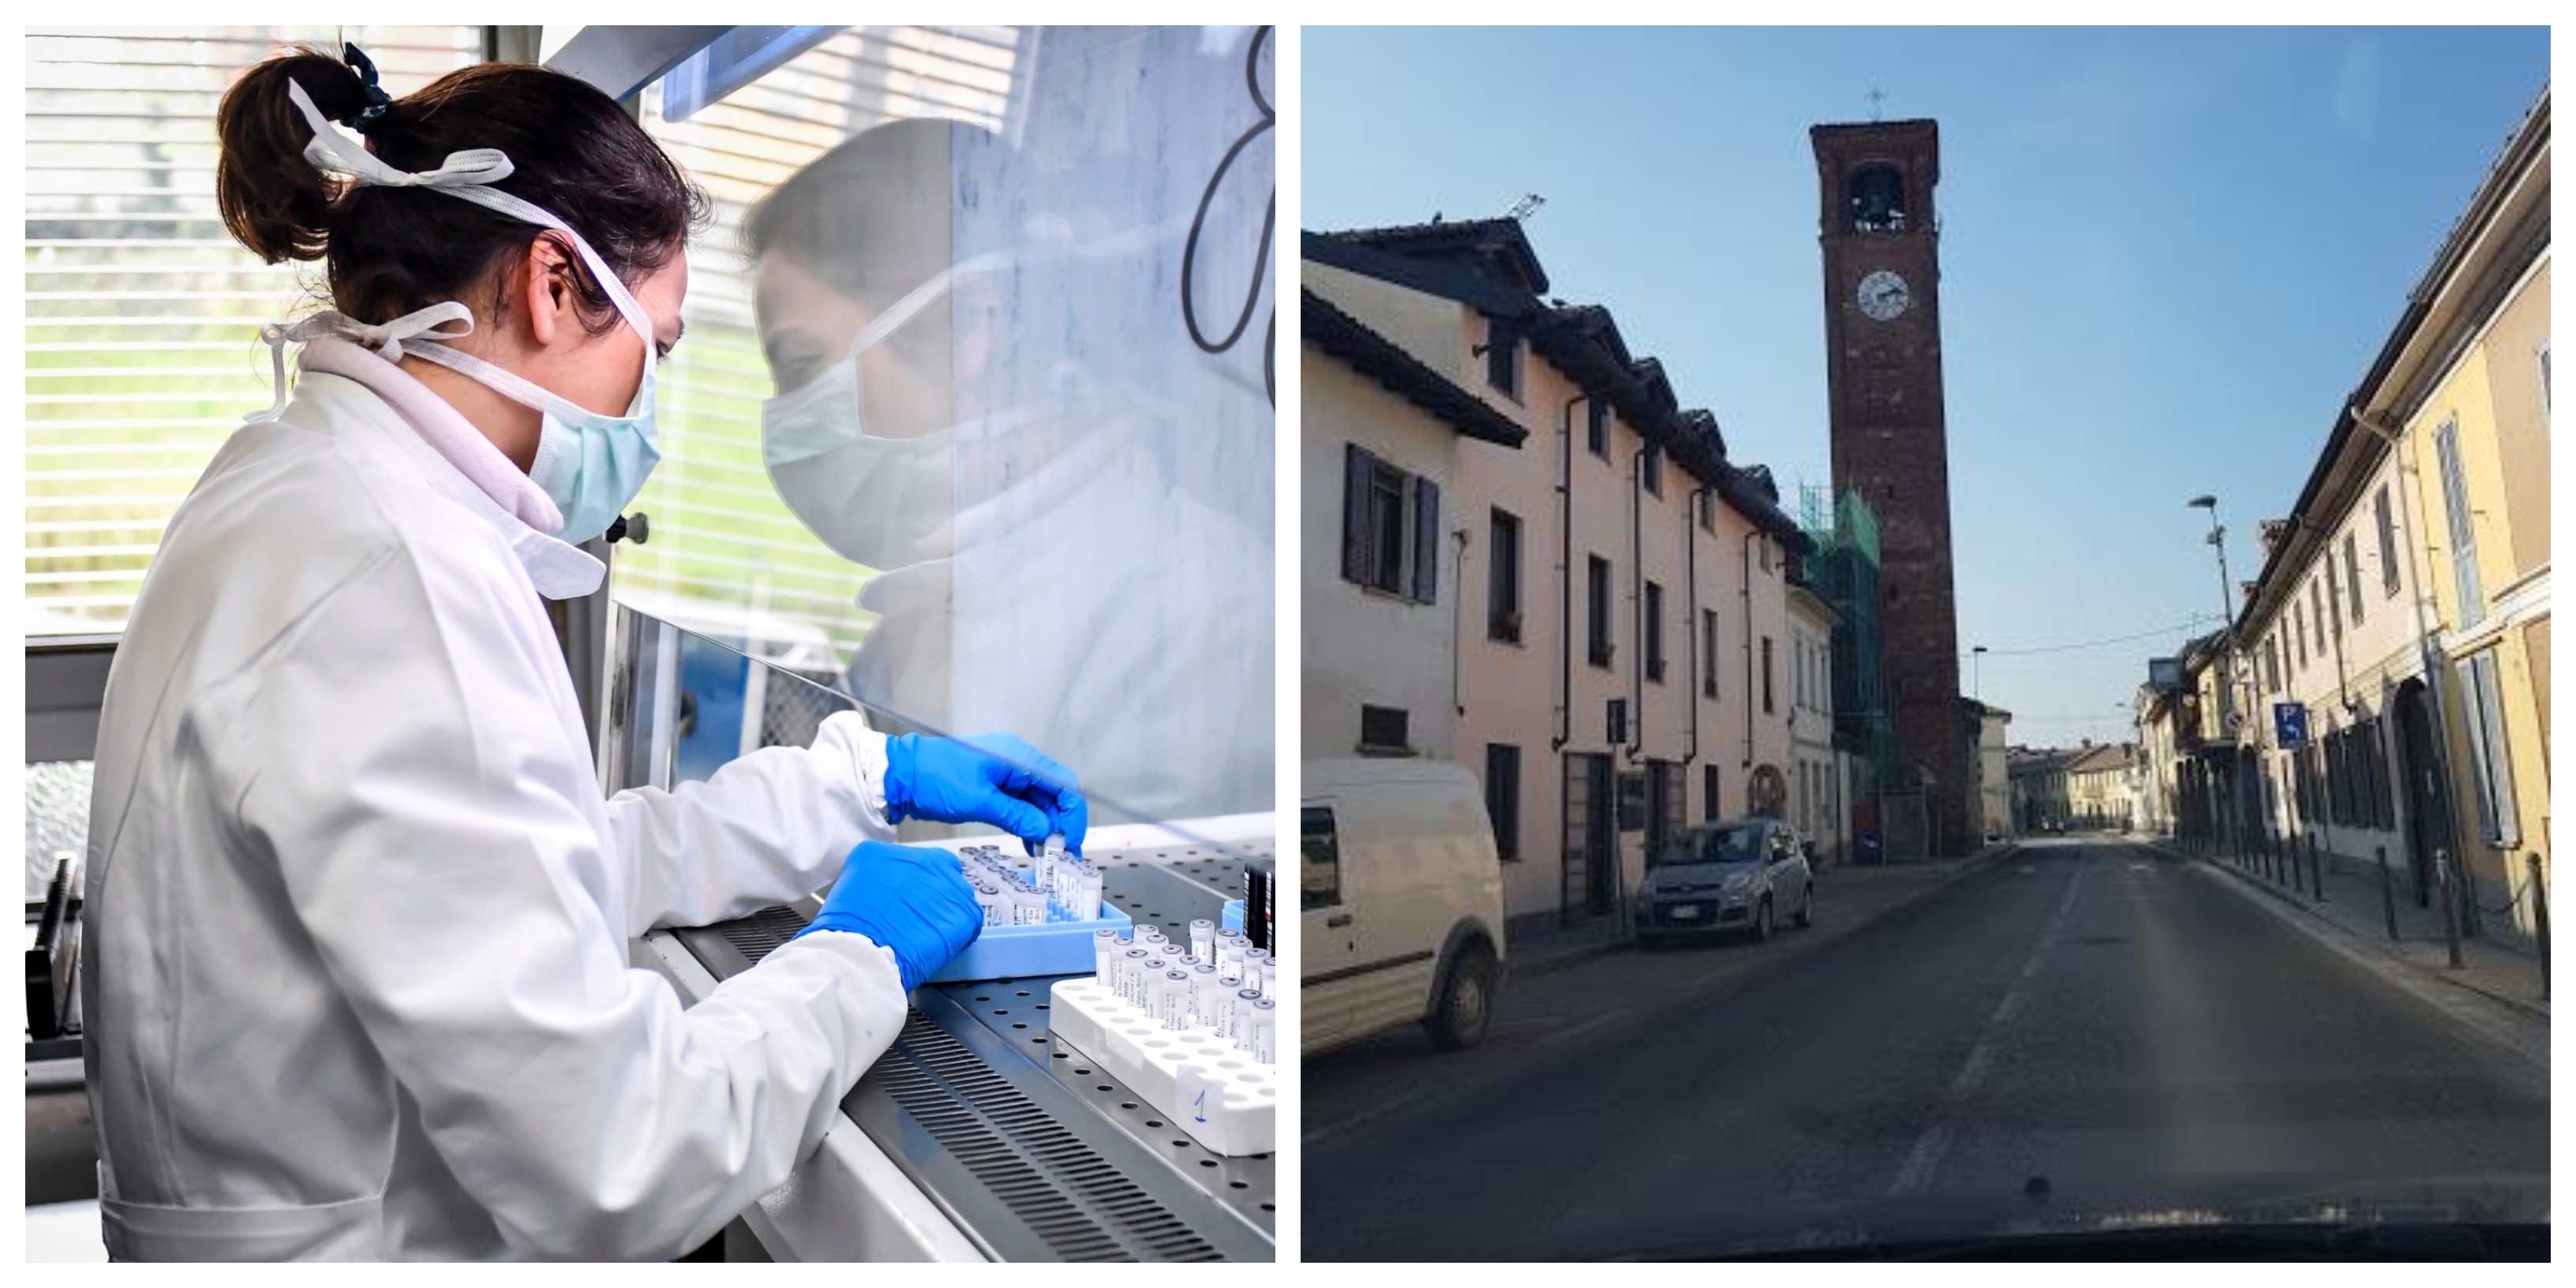 Foto: Ilustračná, laboratórium v provincii Pavia a vpravo záber z talianskej obce Ferrera Erbognone.